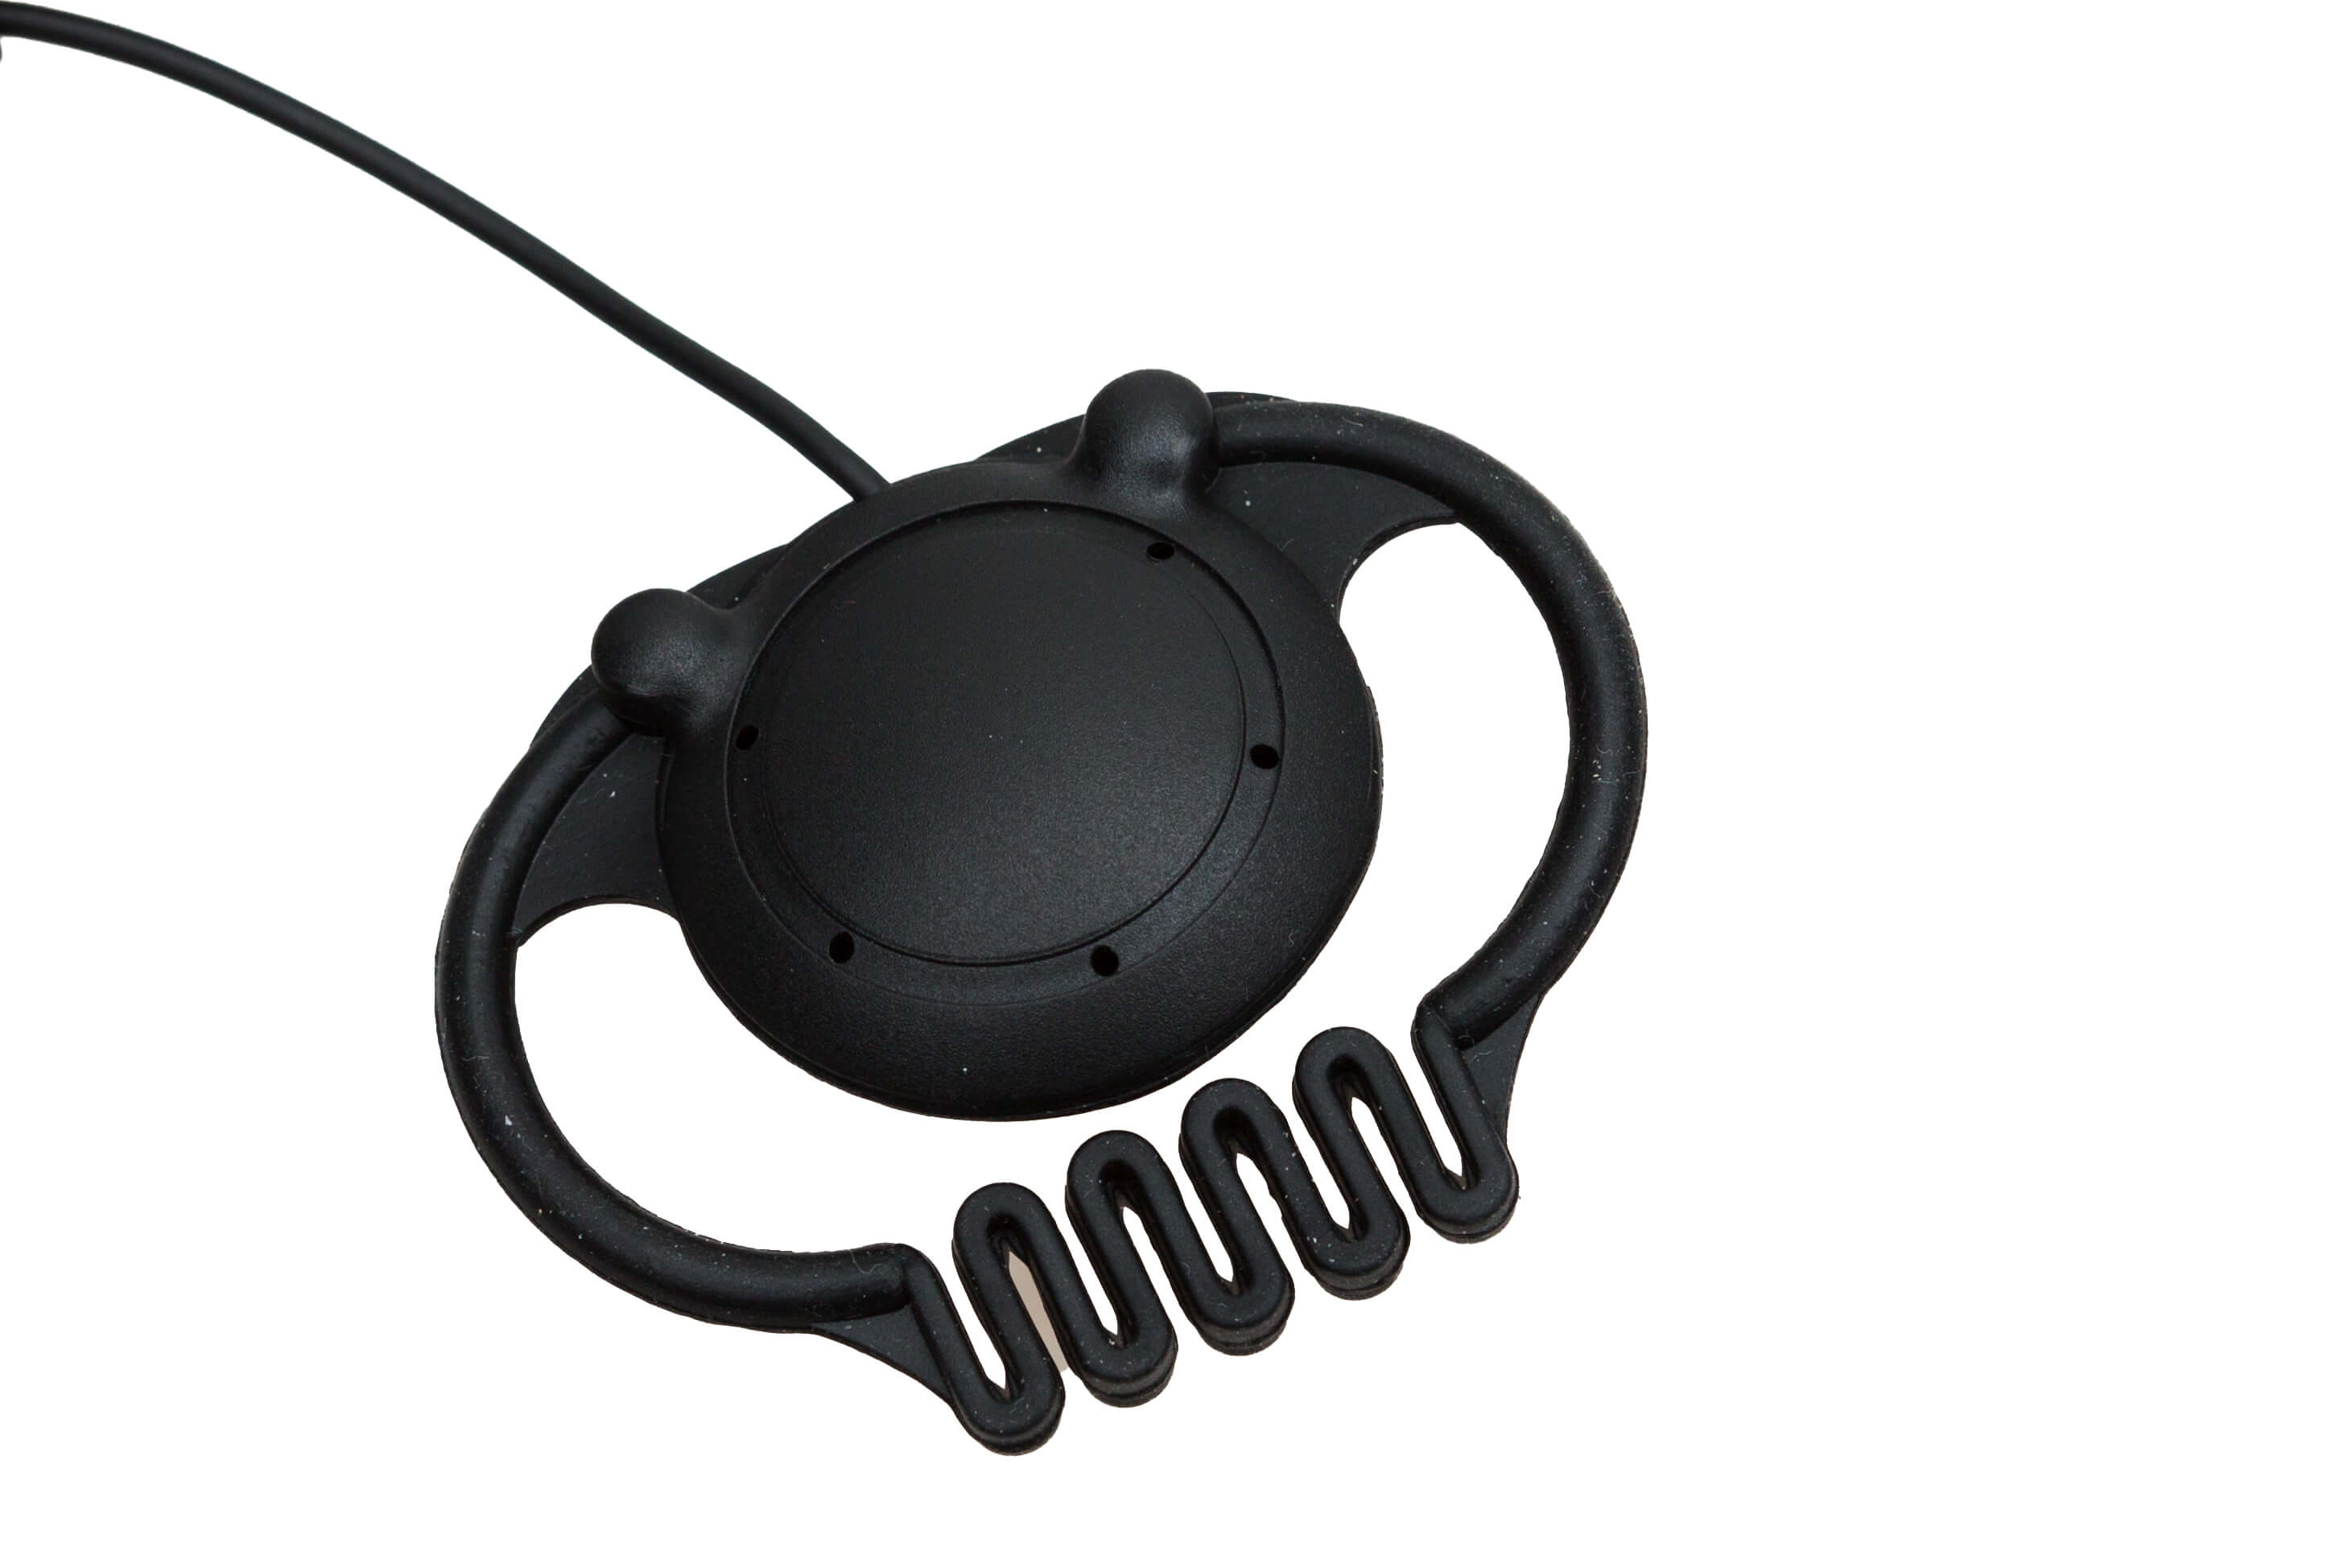 axitour-ea-002-earphone-flexible-earpiece